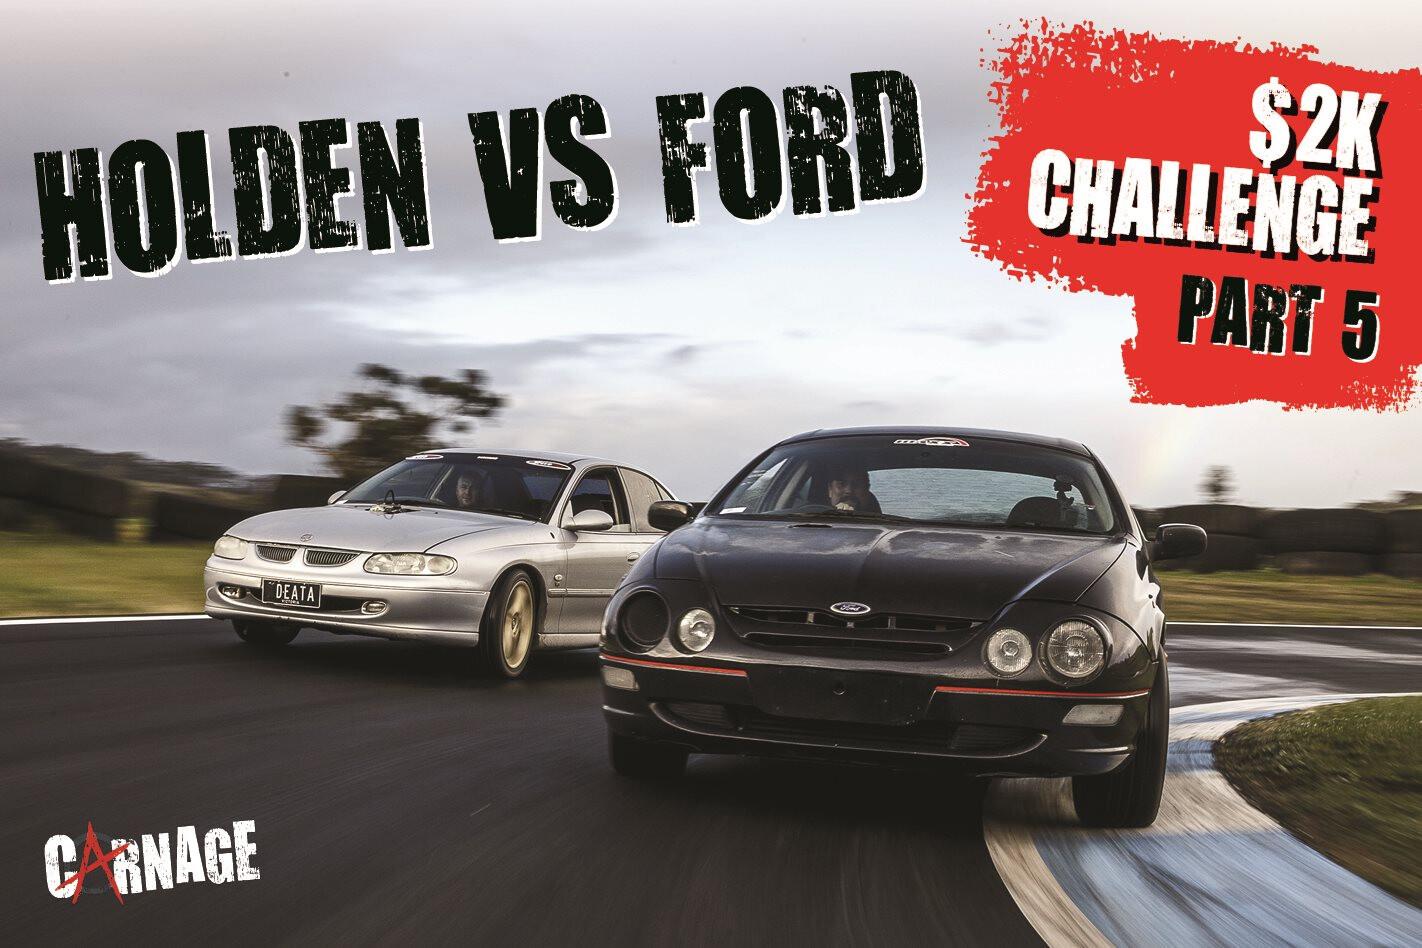 Ford versus Holden $2K Challenge part 5 – Carnage episode 31